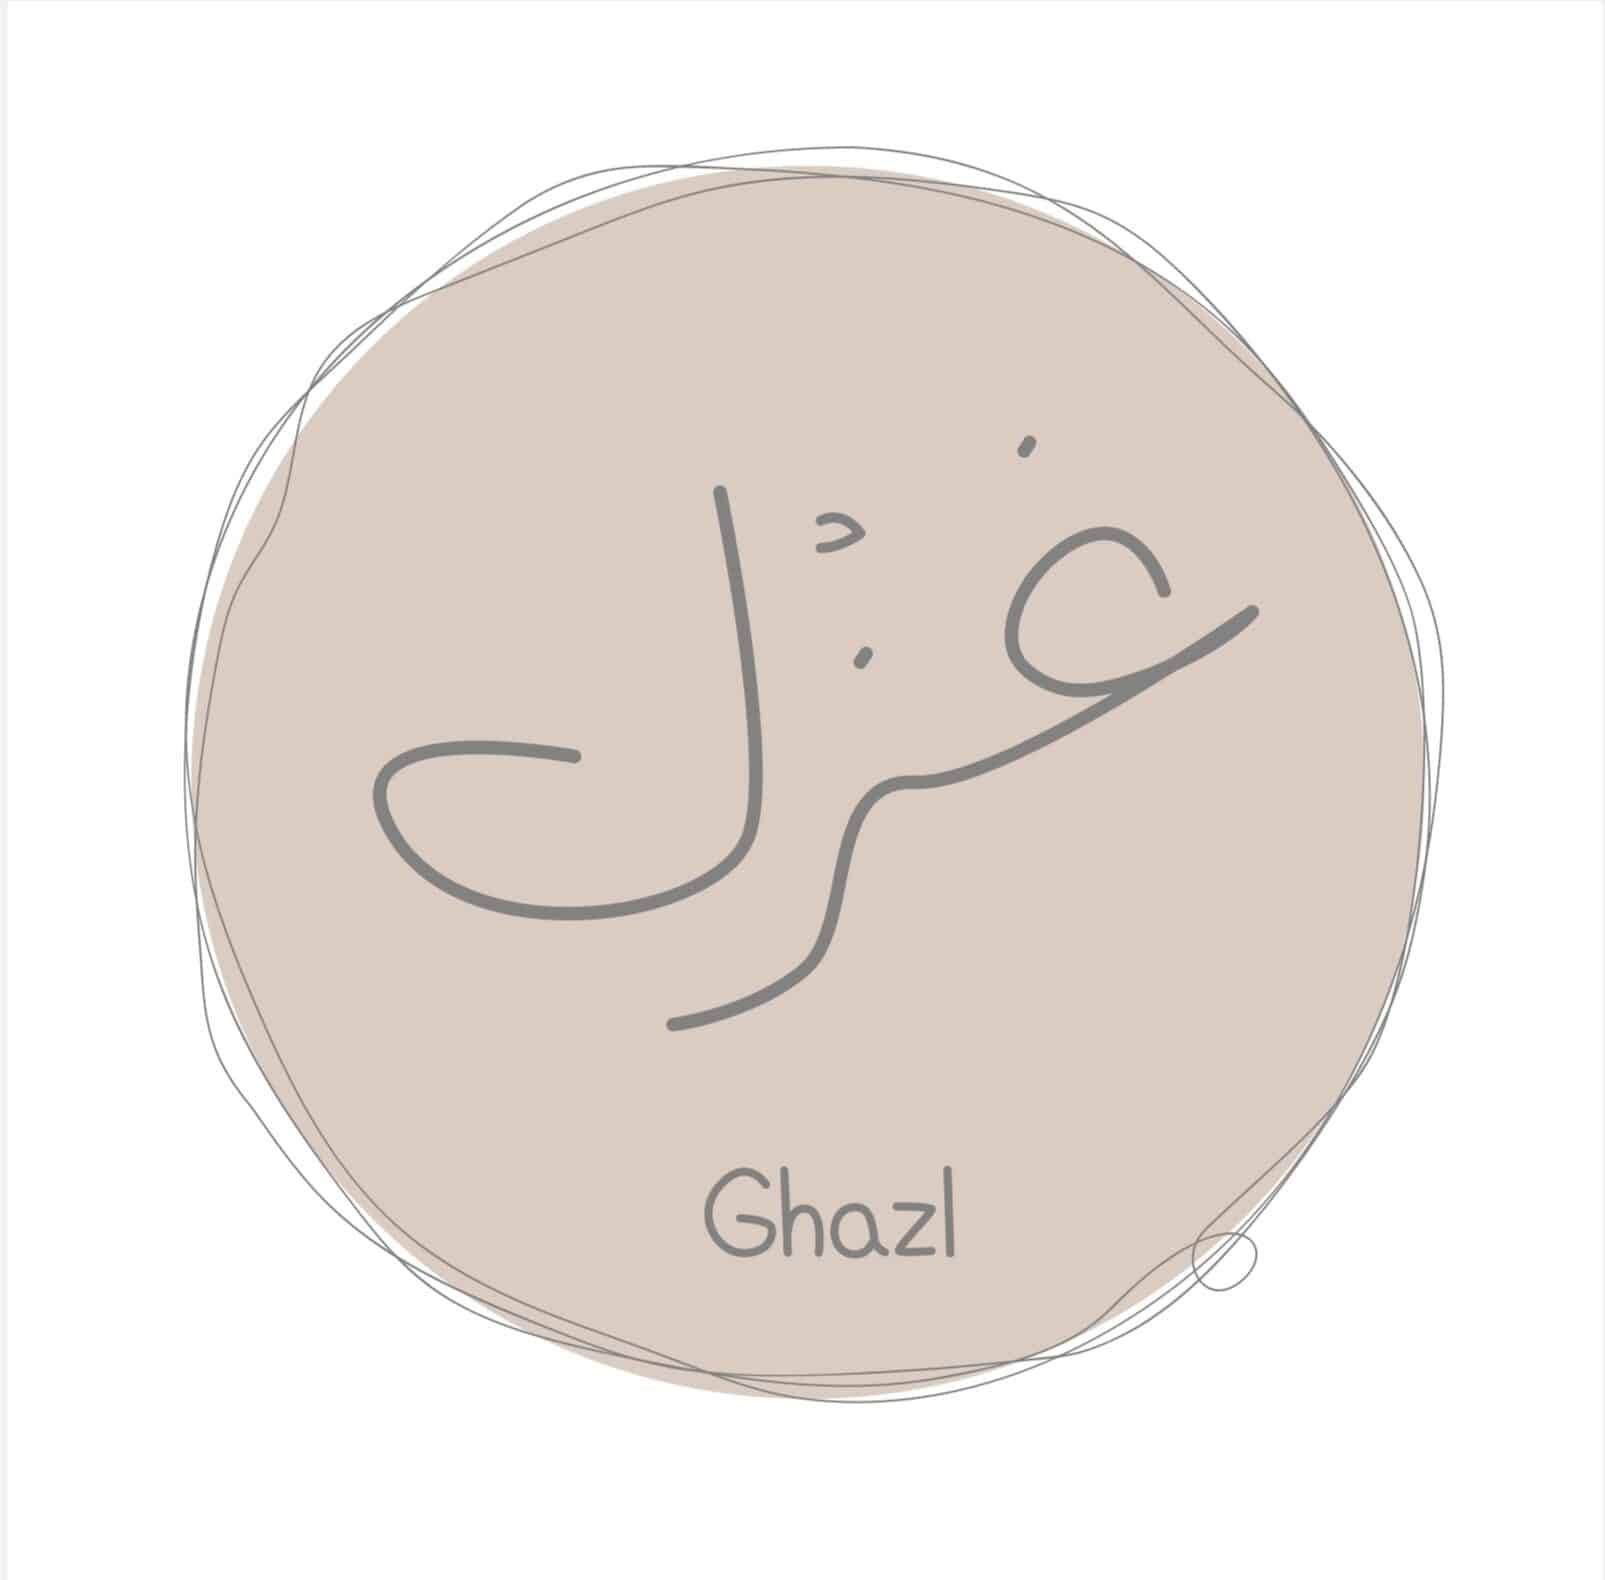 متجر غزْل | Ghazl store